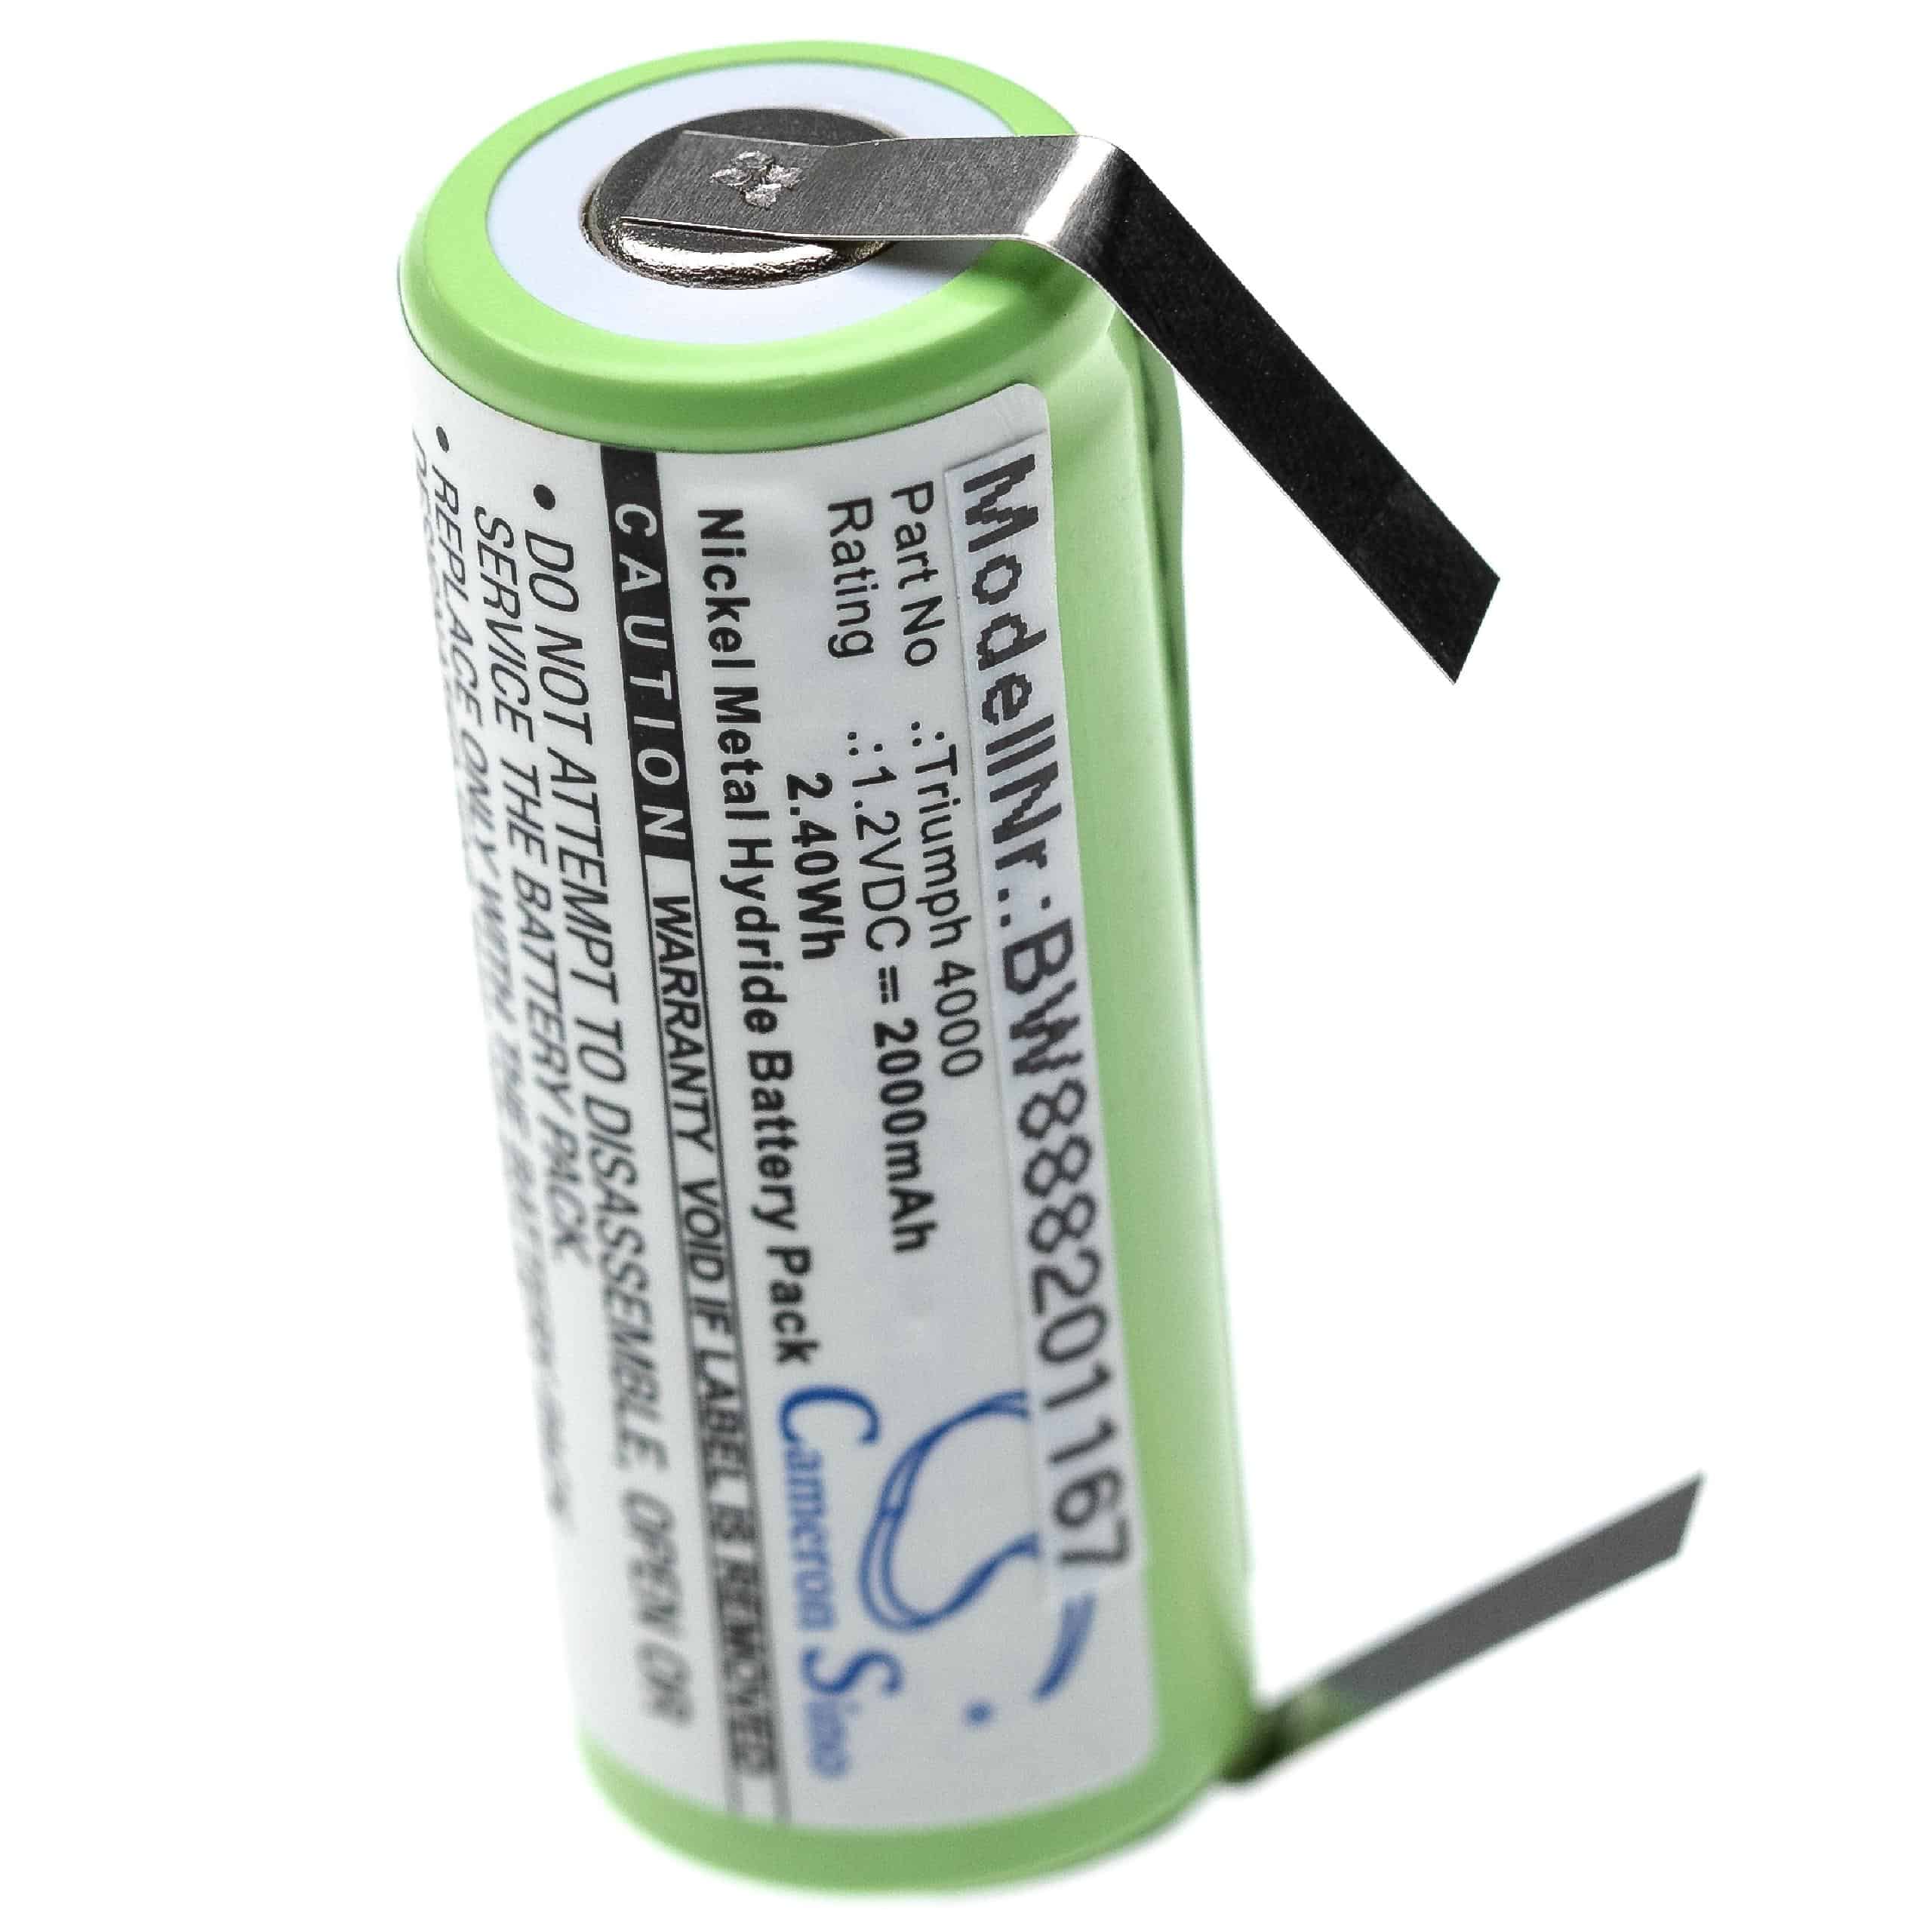 Batterie remplace Oral-B 3745, 3762, 3761 pour brosse à dents - 2000mAh 1,2V NiMH